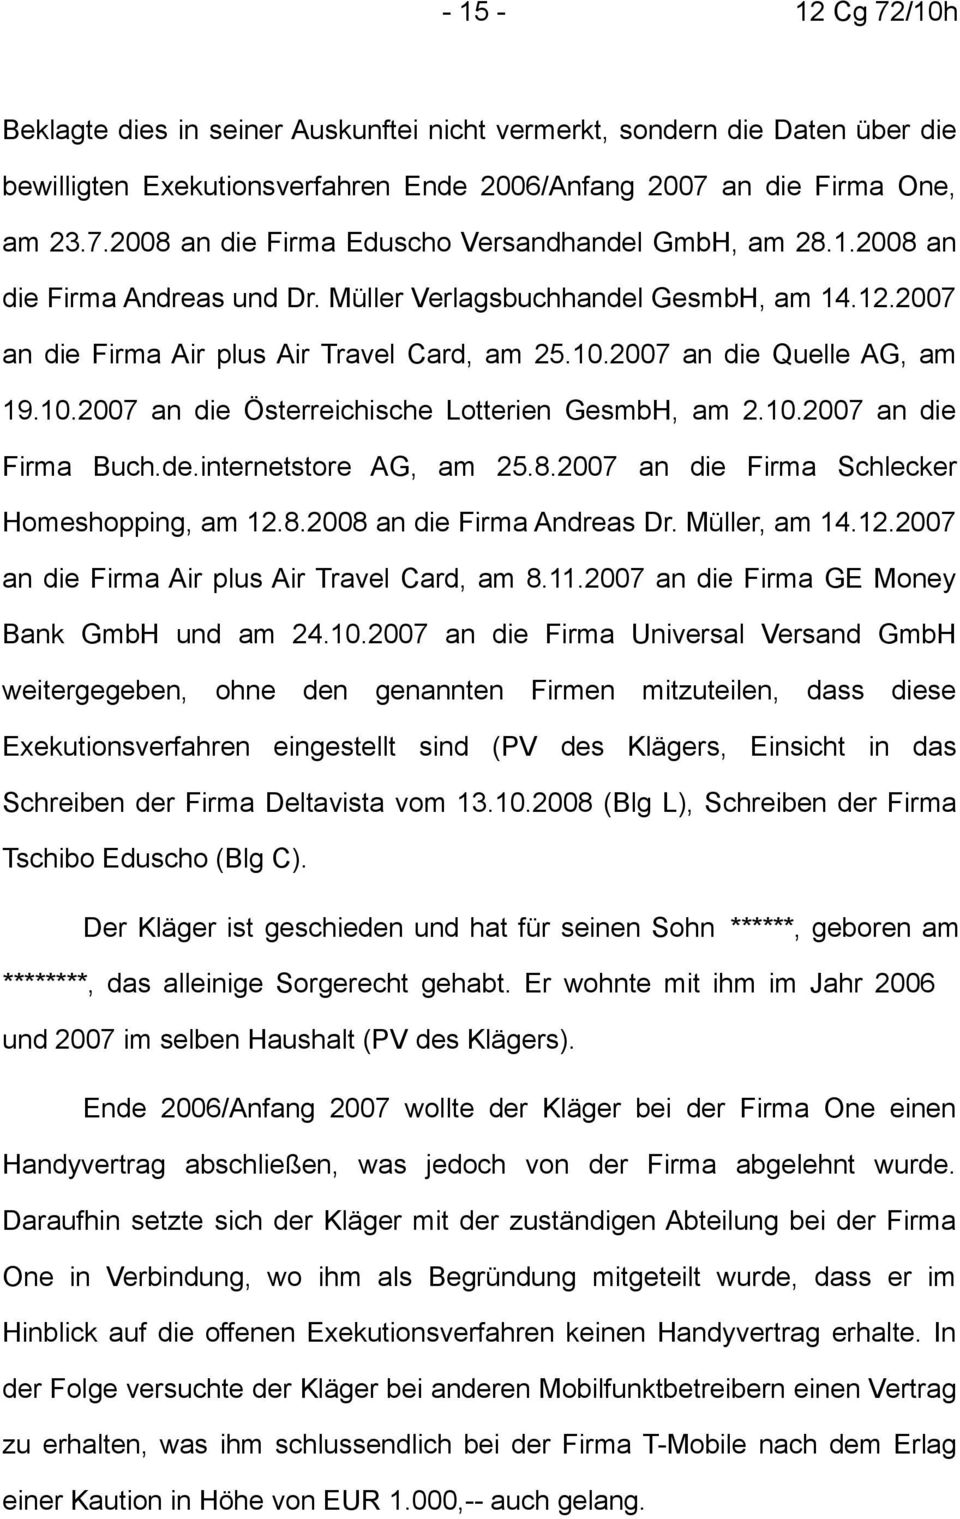 10.2007 an die Firma Buch.de.internetstore AG, am 25.8.2007 an die Firma Schlecker Homeshopping, am 12.8.2008 an die Firma Andreas Dr. Müller, am 14.12.2007 an die Firma Air plus Air Travel Card, am 8.